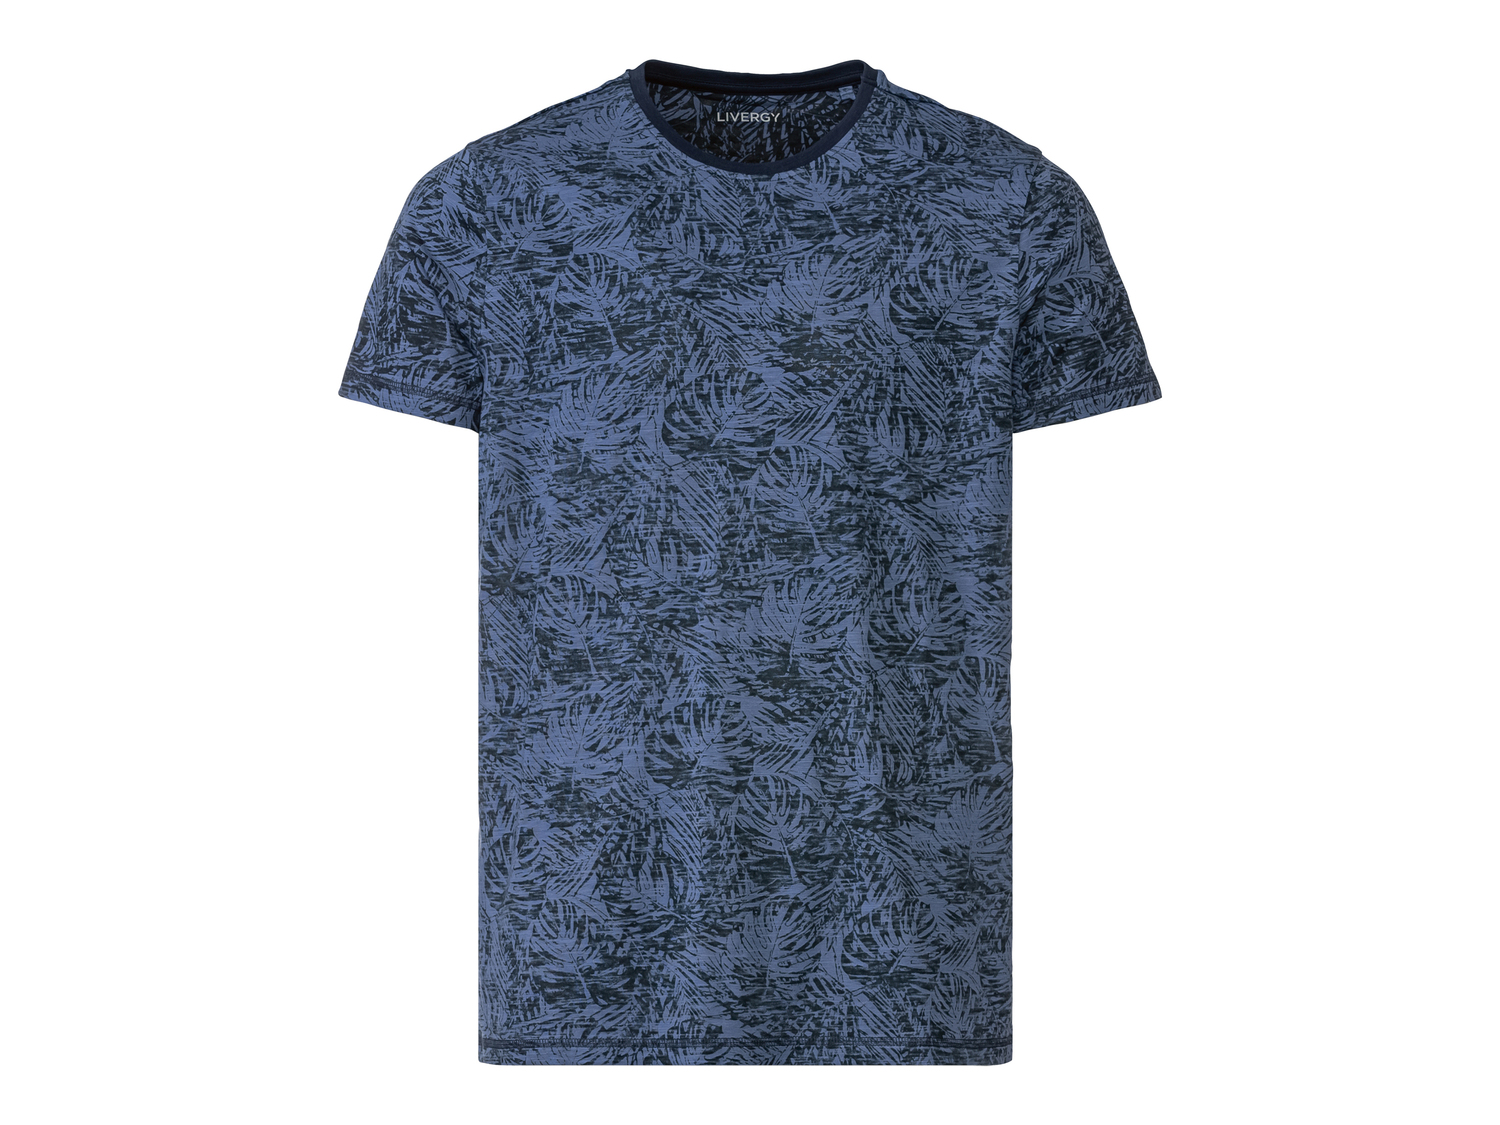 T-shirt da uomo Livergy, prezzo 4.99 &#8364; 
Misure: S-XL 
- Puro cotone
Taglie ...